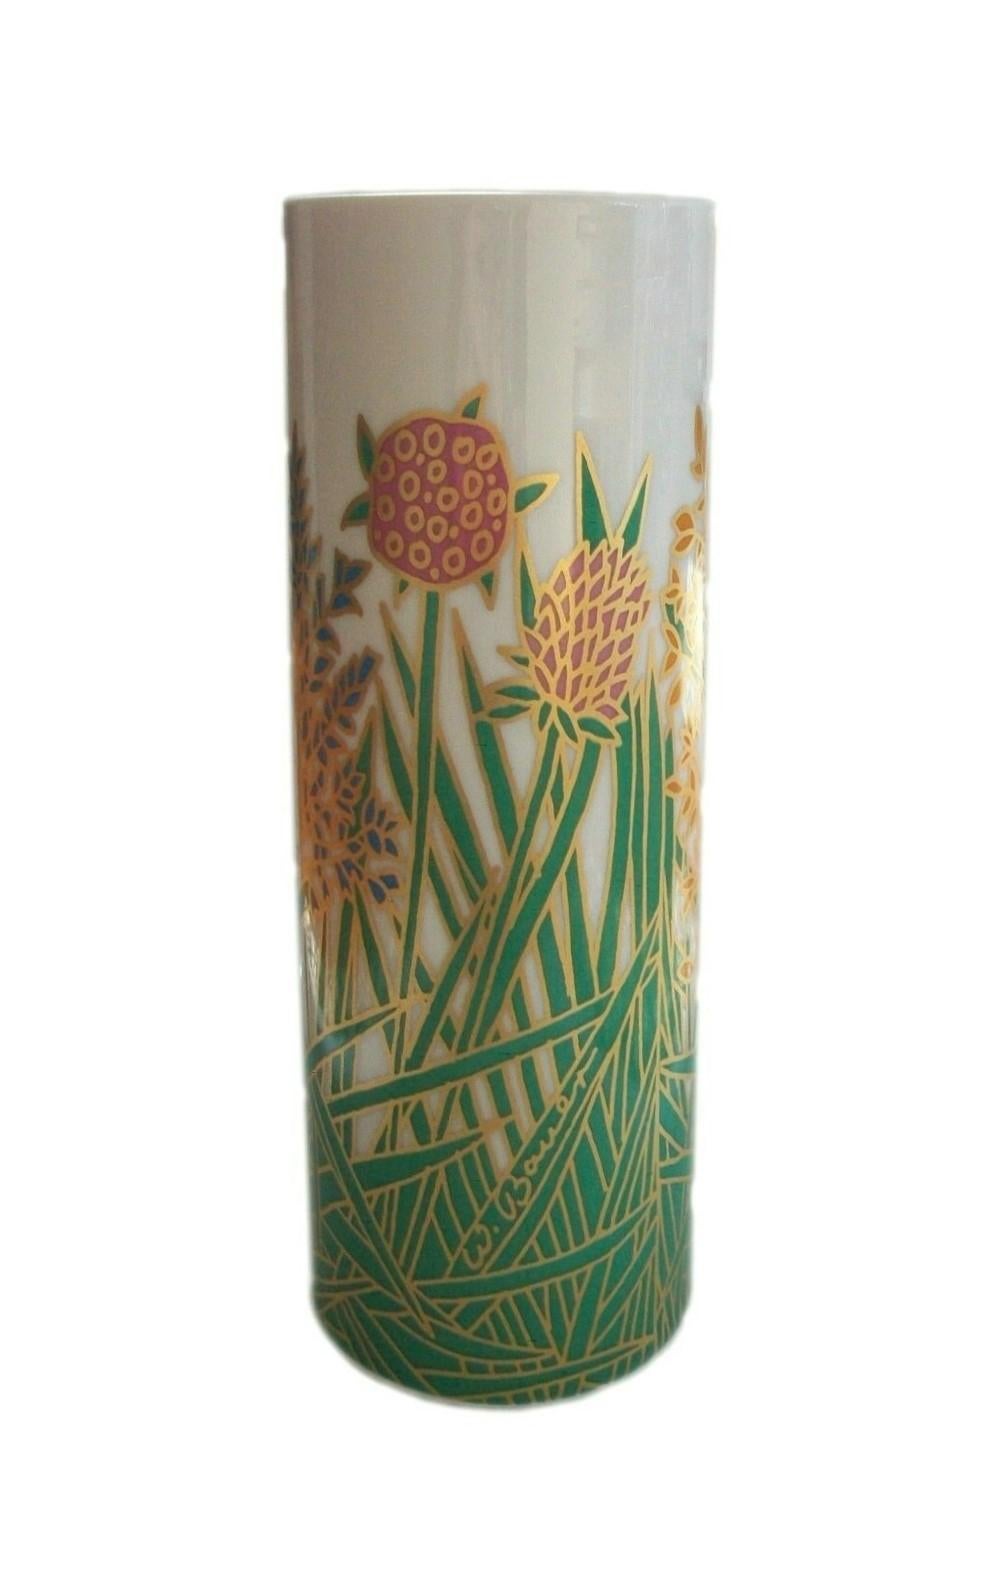 ROSENTHAL  Studio Linie  Wolf Bauer (Designer) - Vergoldete und mit Blumen verzierte Vase aus der Mitte des Jahrhunderts - signiert im Design - Rosenthal Stempel auf dem Sockel - Deutschland - um 1970.

Hervorragender/neuwertiger Zustand - kein